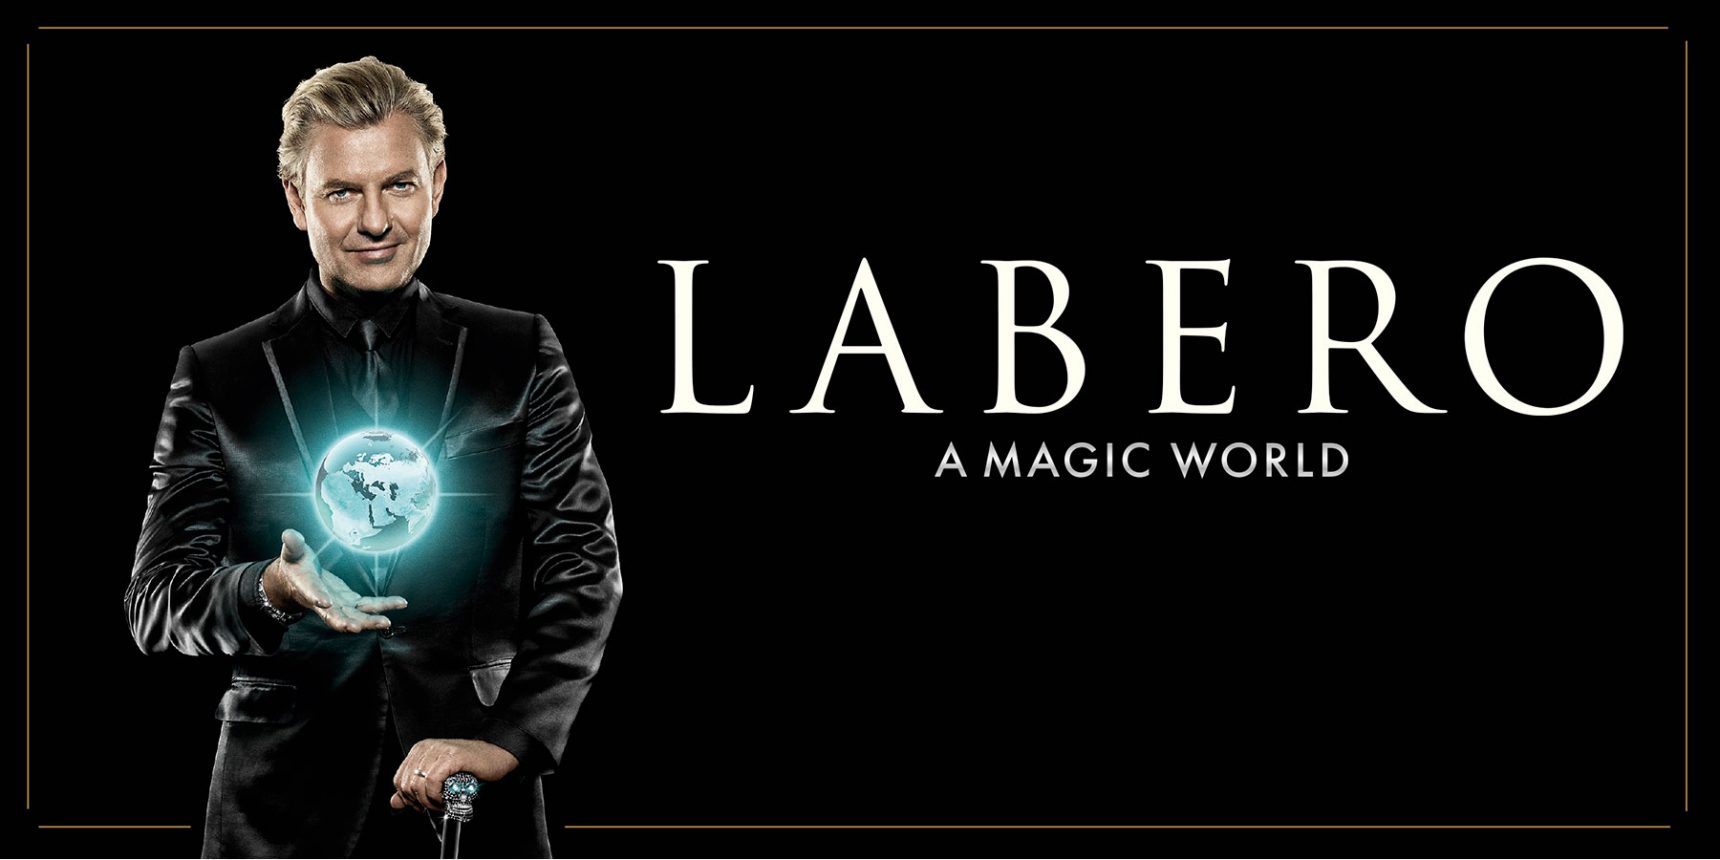 Joe Laber i svart kostym. Labero - A magic World ligger som text till höger om honom.